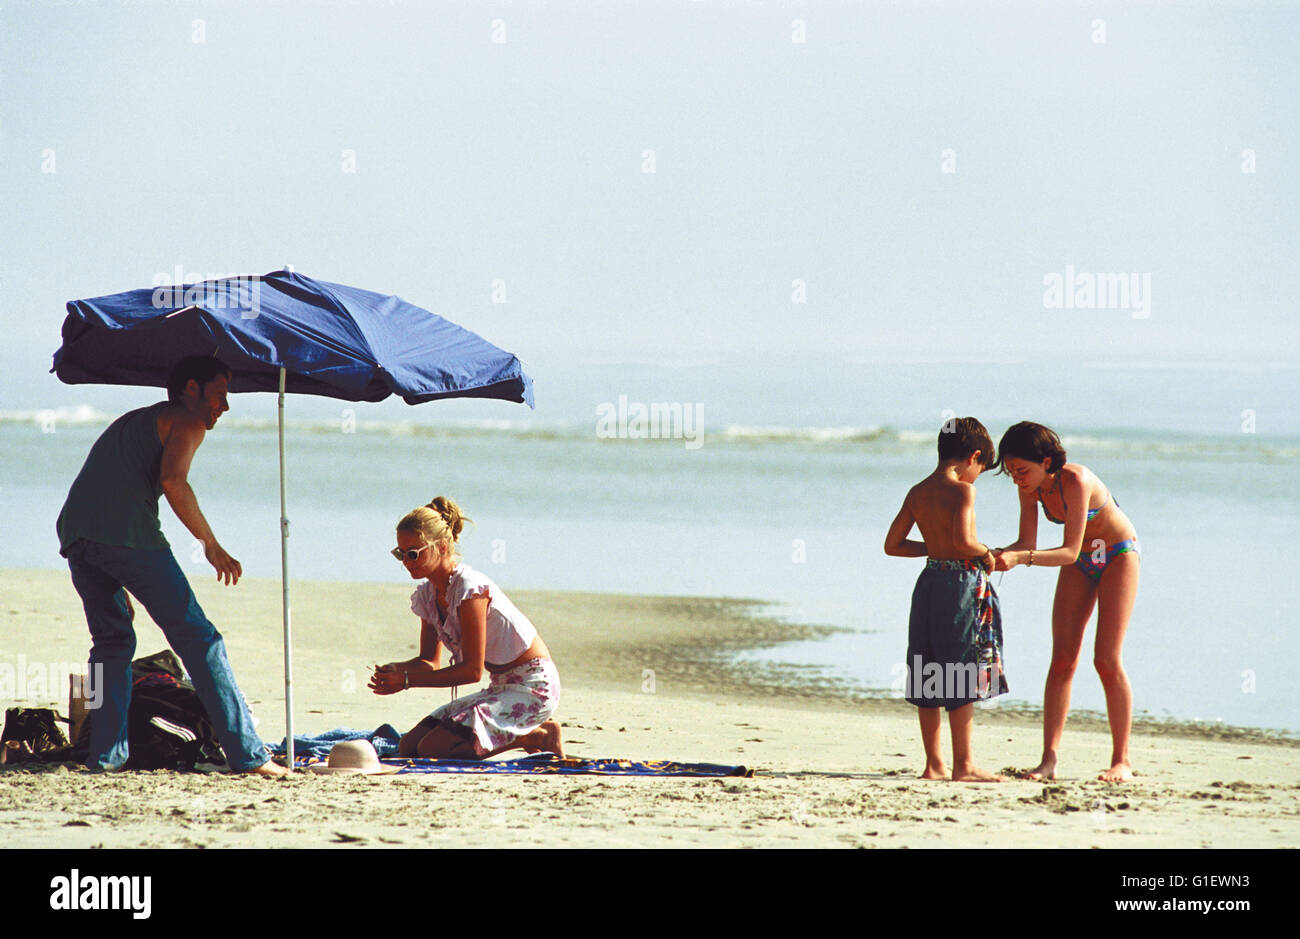 Eine mano voll Gras, Deutschland/Iran 2000, Regie: Roland Suso Richter, Szenenfoto Foto Stock